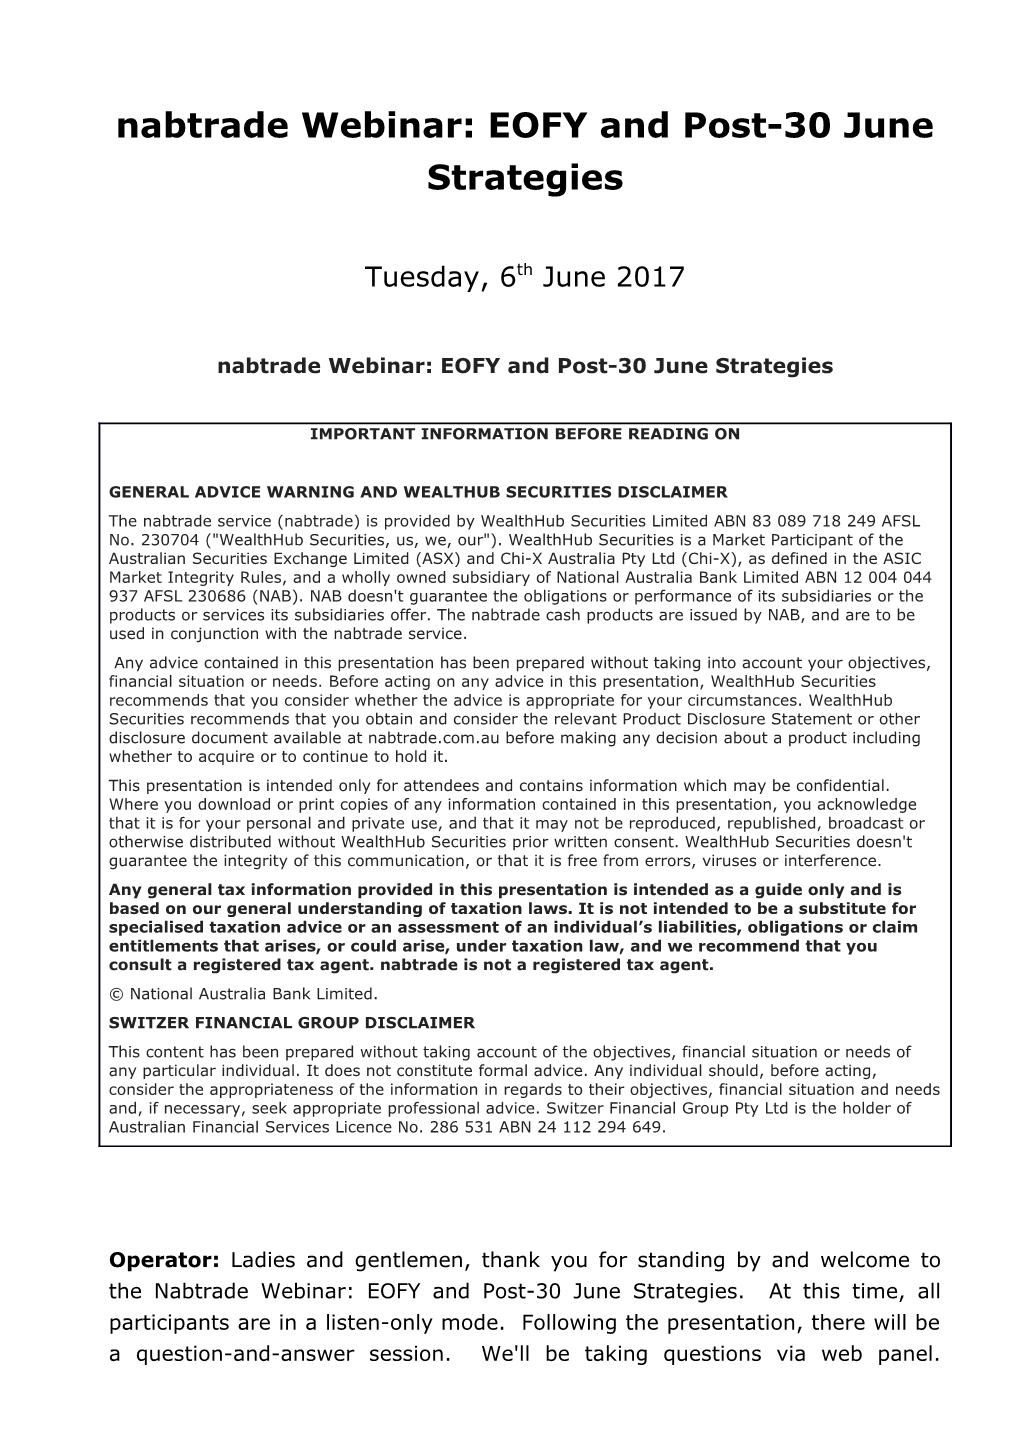 Nabtrade Webinar: EOFY and Post-30 June Strategies